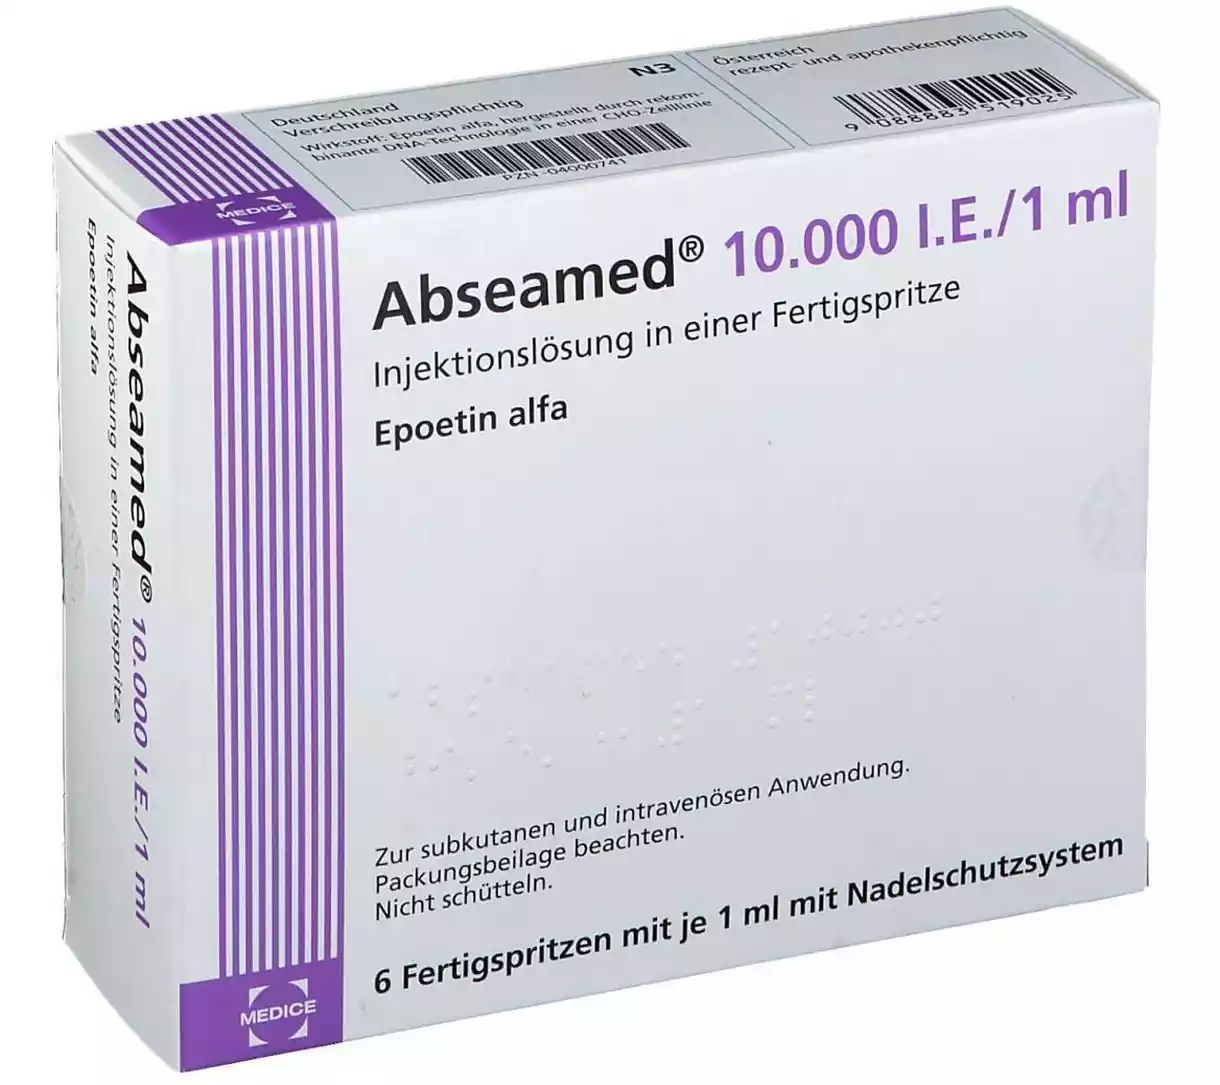 Φάρμακο Abseamed (εποετίνη άλφα): Θεραπεία αναιμίας σε χρόνια νεφρική νόσο.